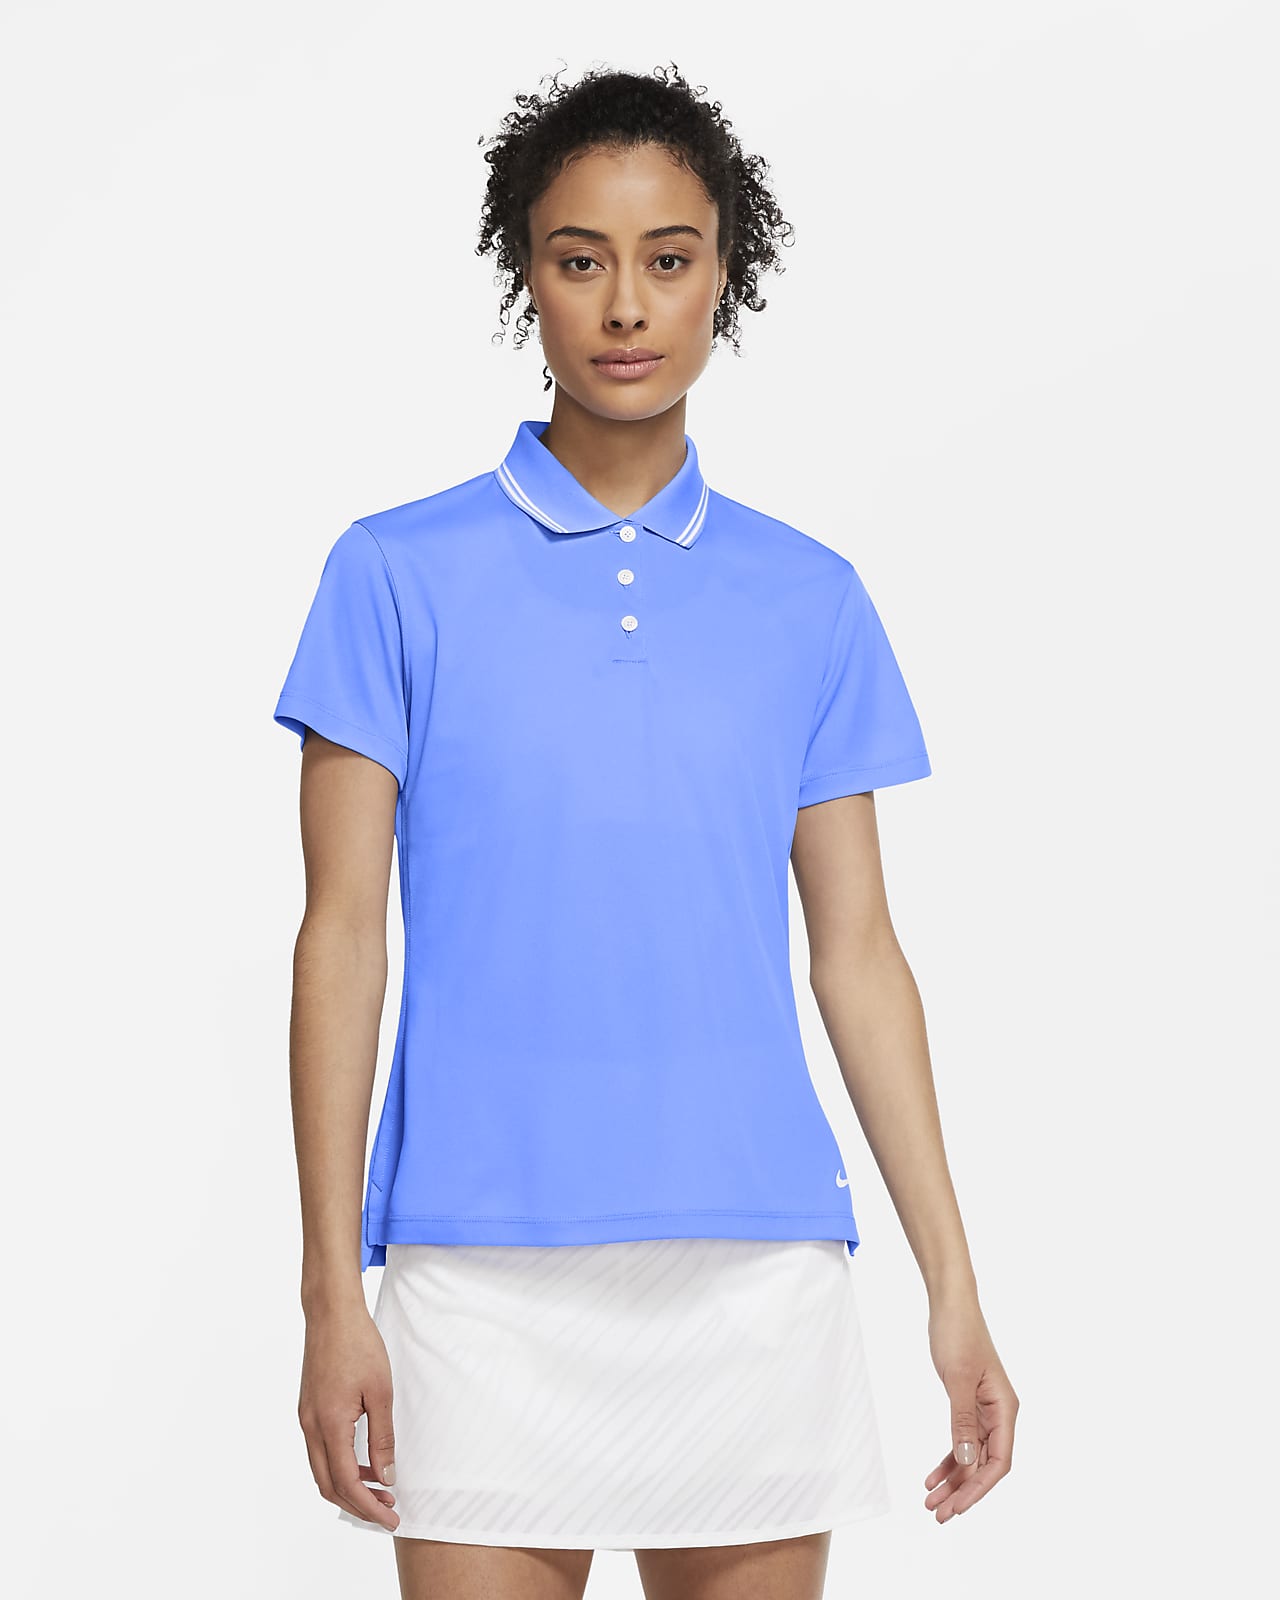 women's dri fit golf shirts